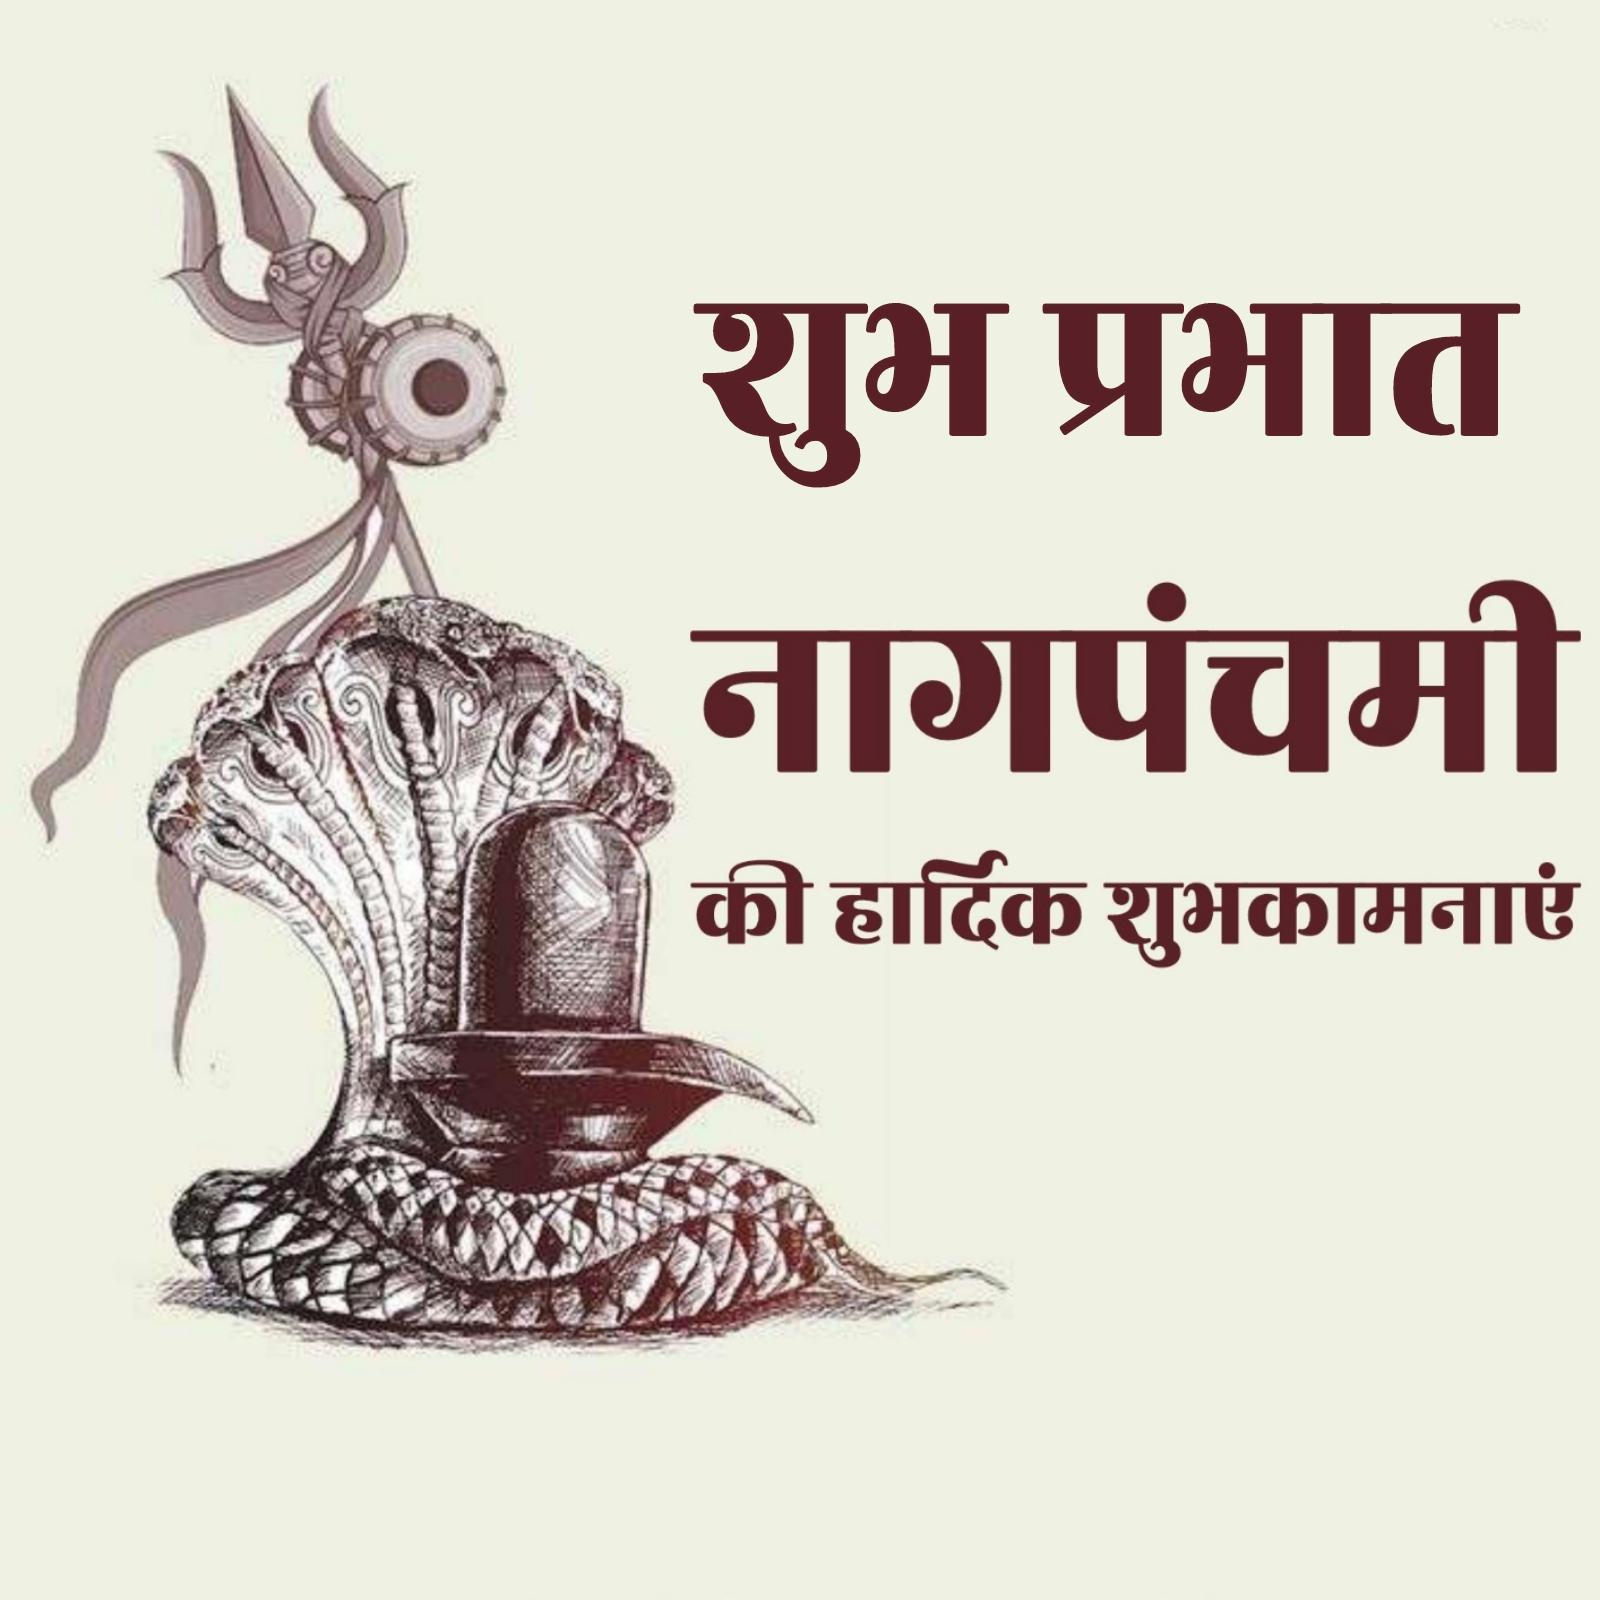 Shubh Prabhat Nag Panchami Ki Hardik Shubhkamnaye Images